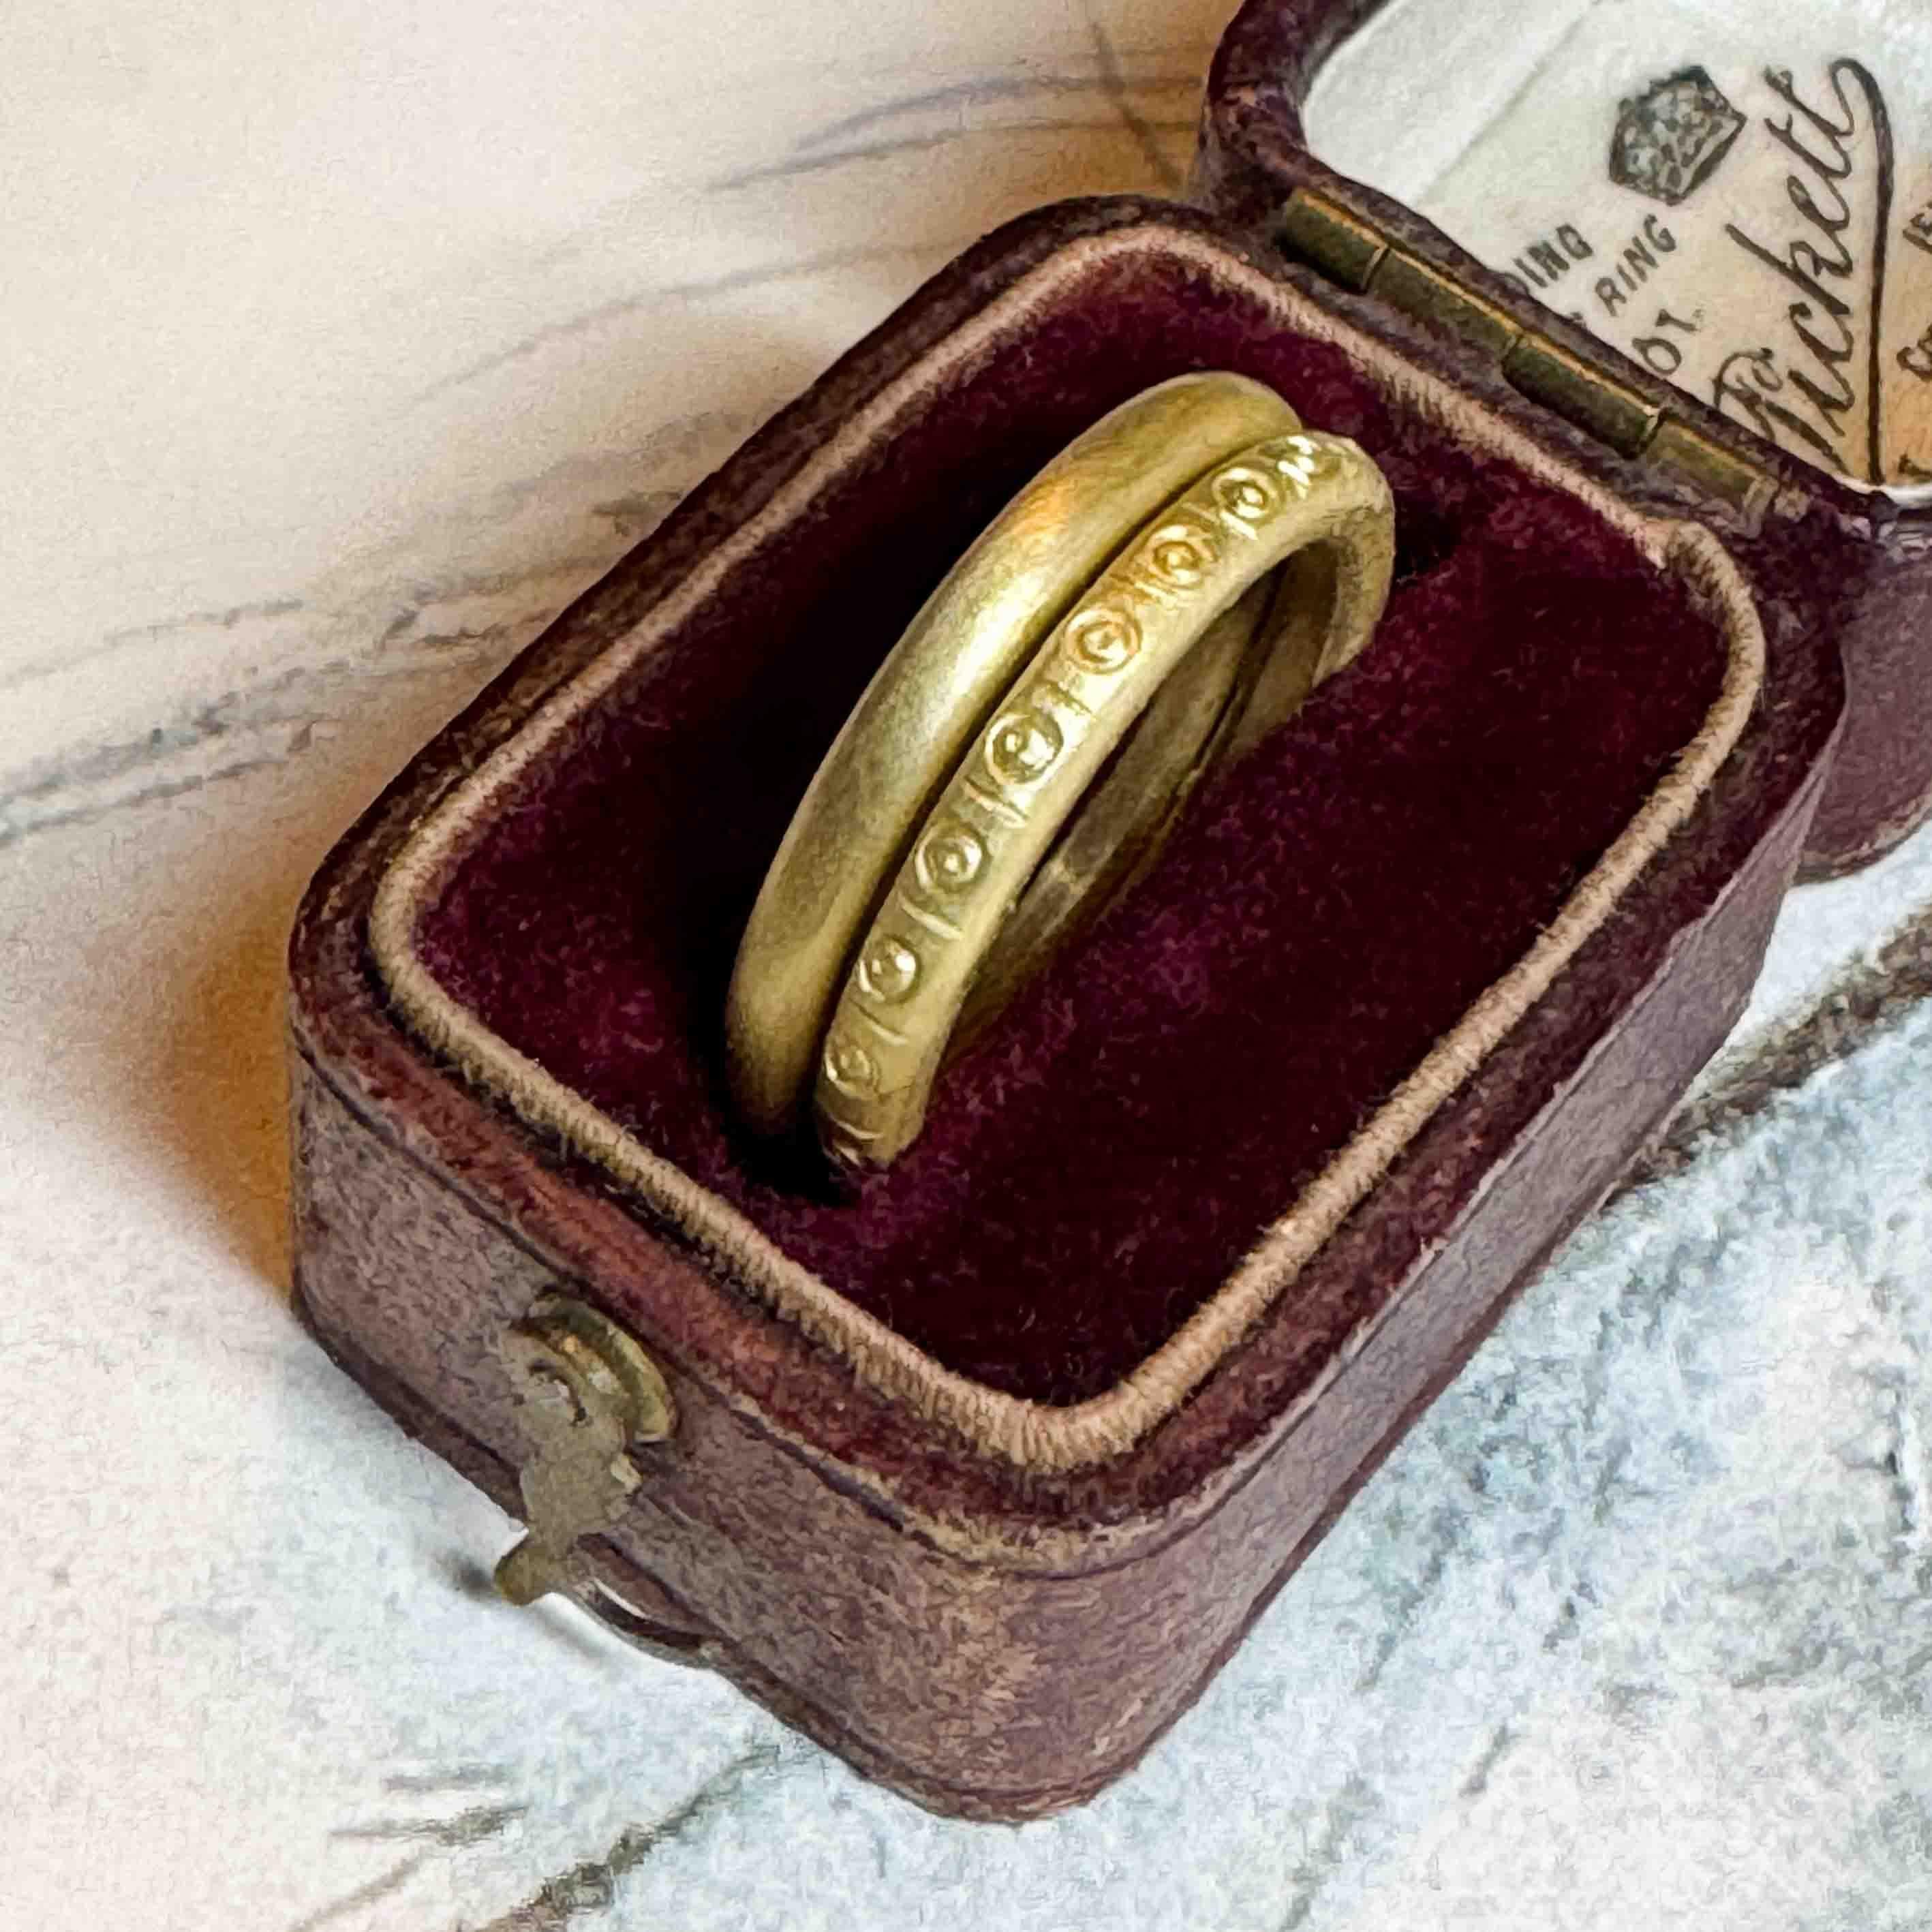 L'alliance éthique Romi est fabriquée à la main en or 18ct Fairmined. Ajoutés à l'or, les motifs estampillés à la main créent une bague artisanale unique que vous ne trouverez pas dans le commerce.

Romi est un anneau rond de style halo de 2,3 mm de